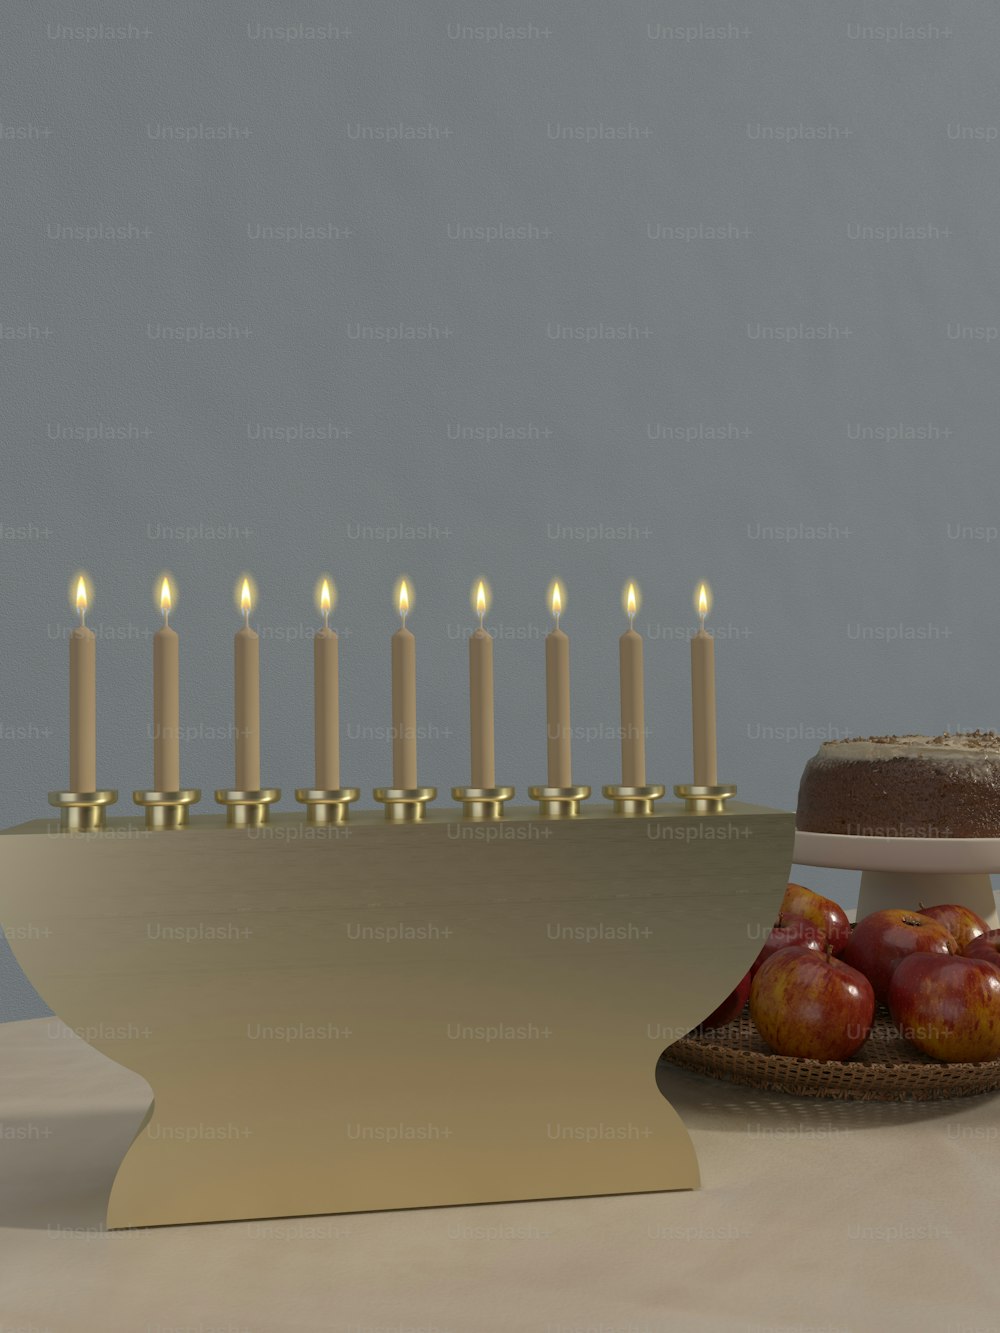 Un pastel sentado encima de una mesa junto a un plato de manzanas